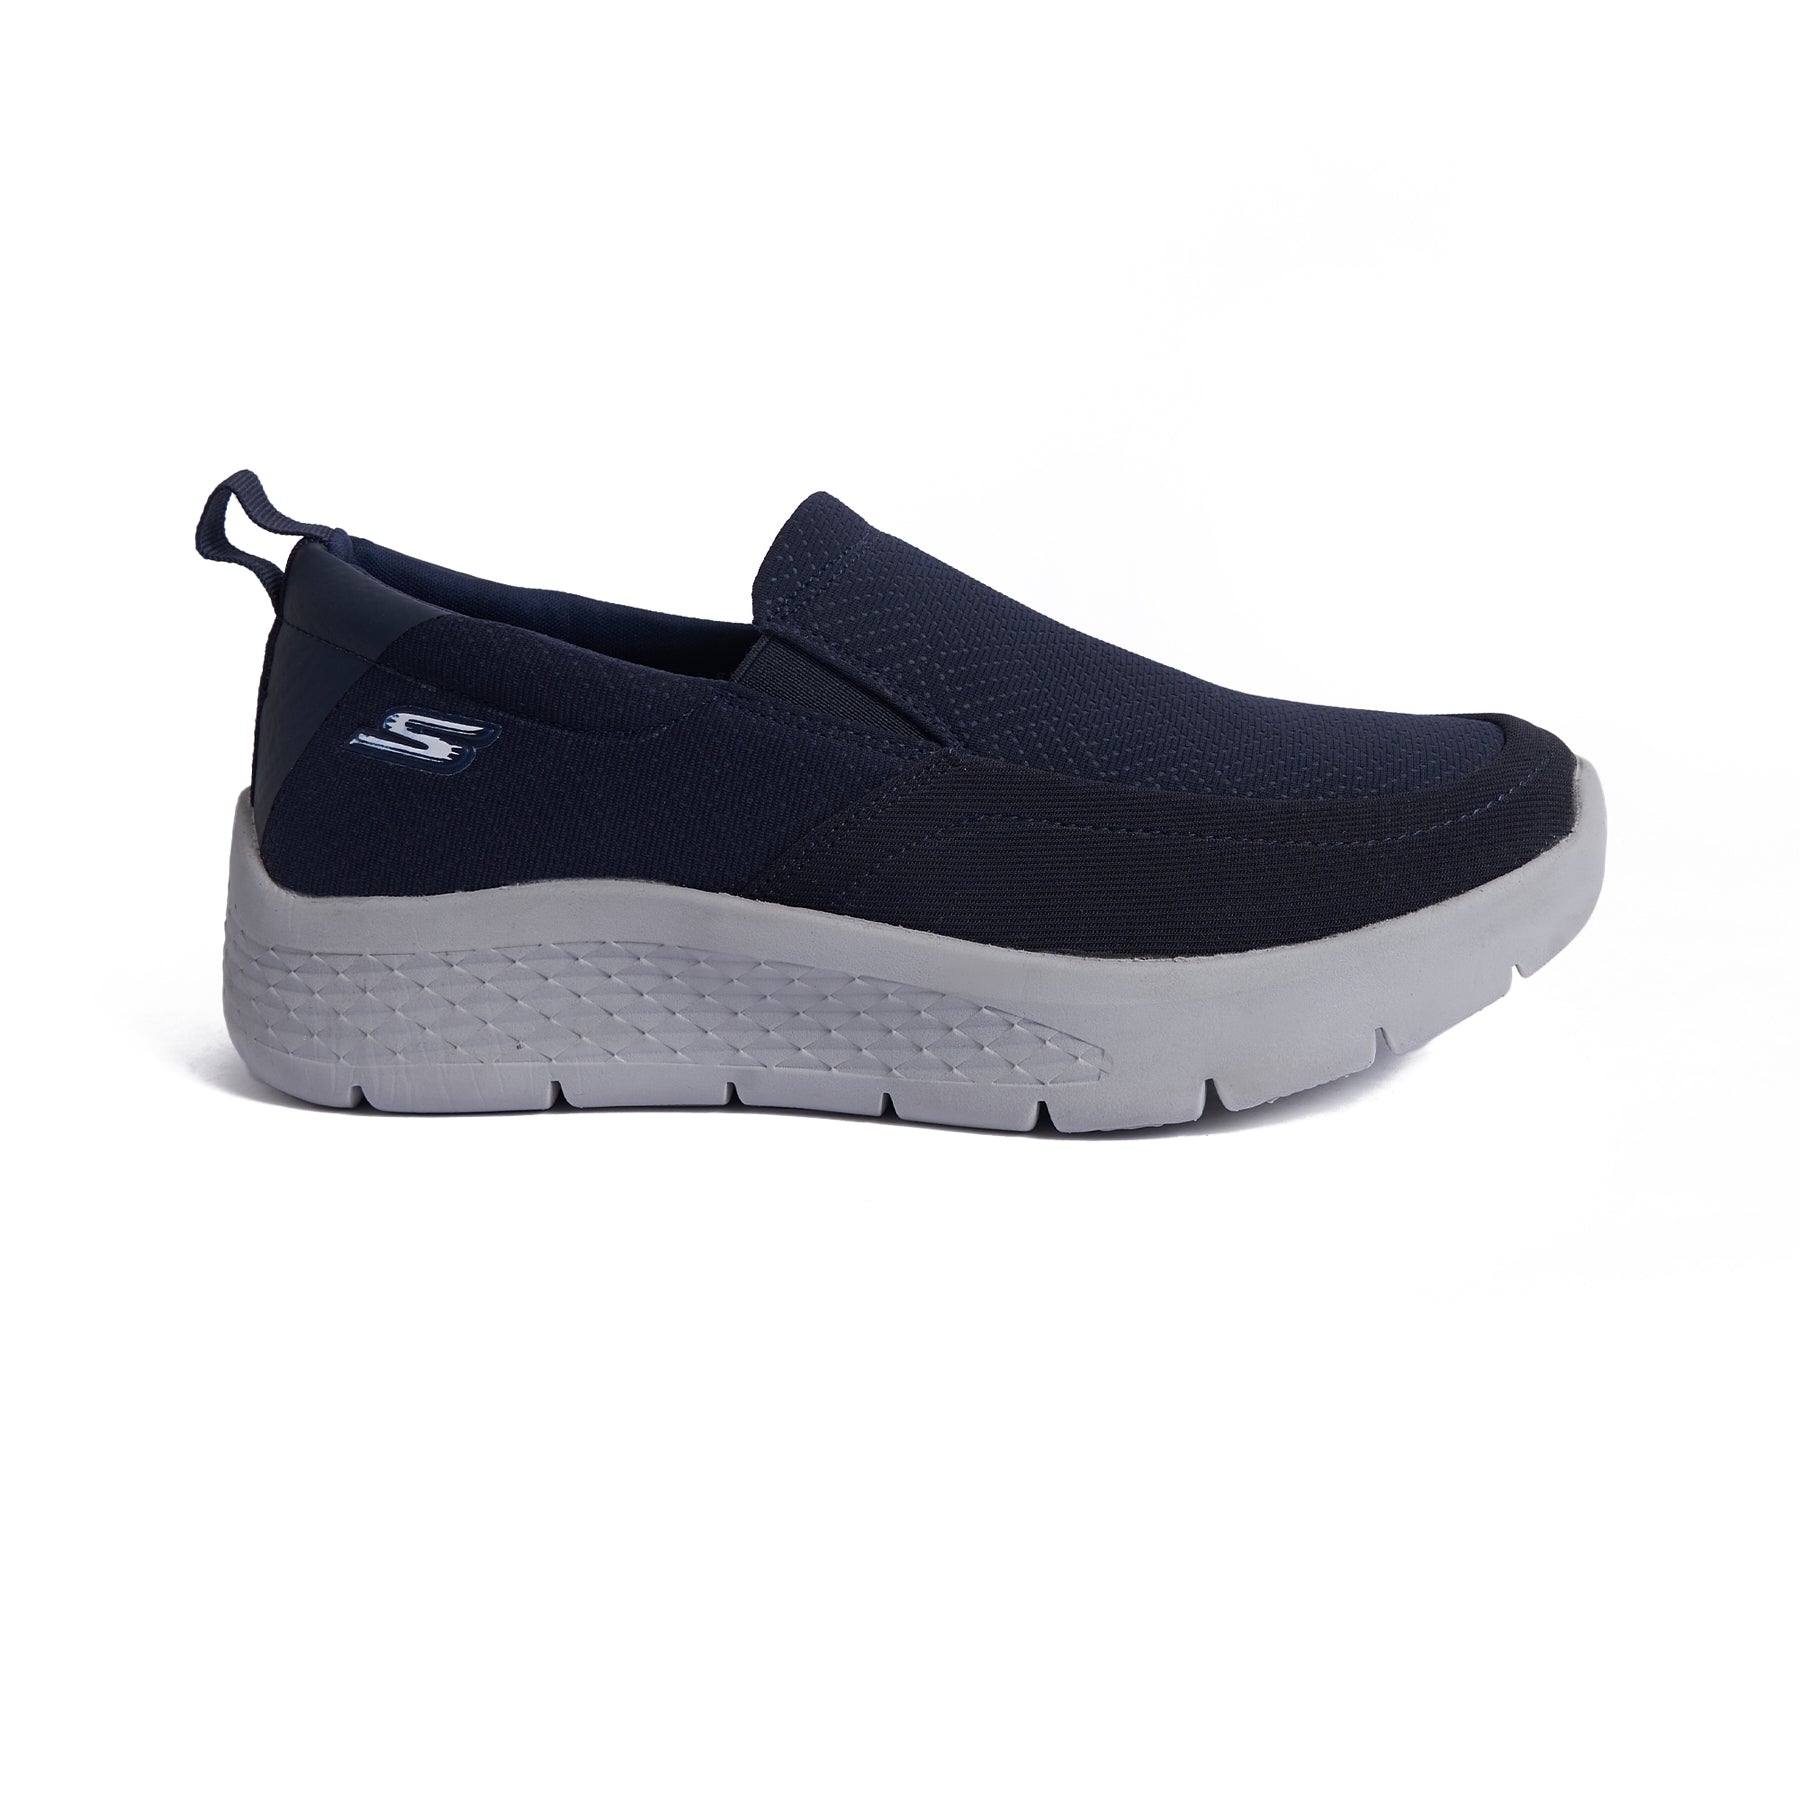 Men's Skechers Stylish and Sleek Sneaker - Navy Model A06